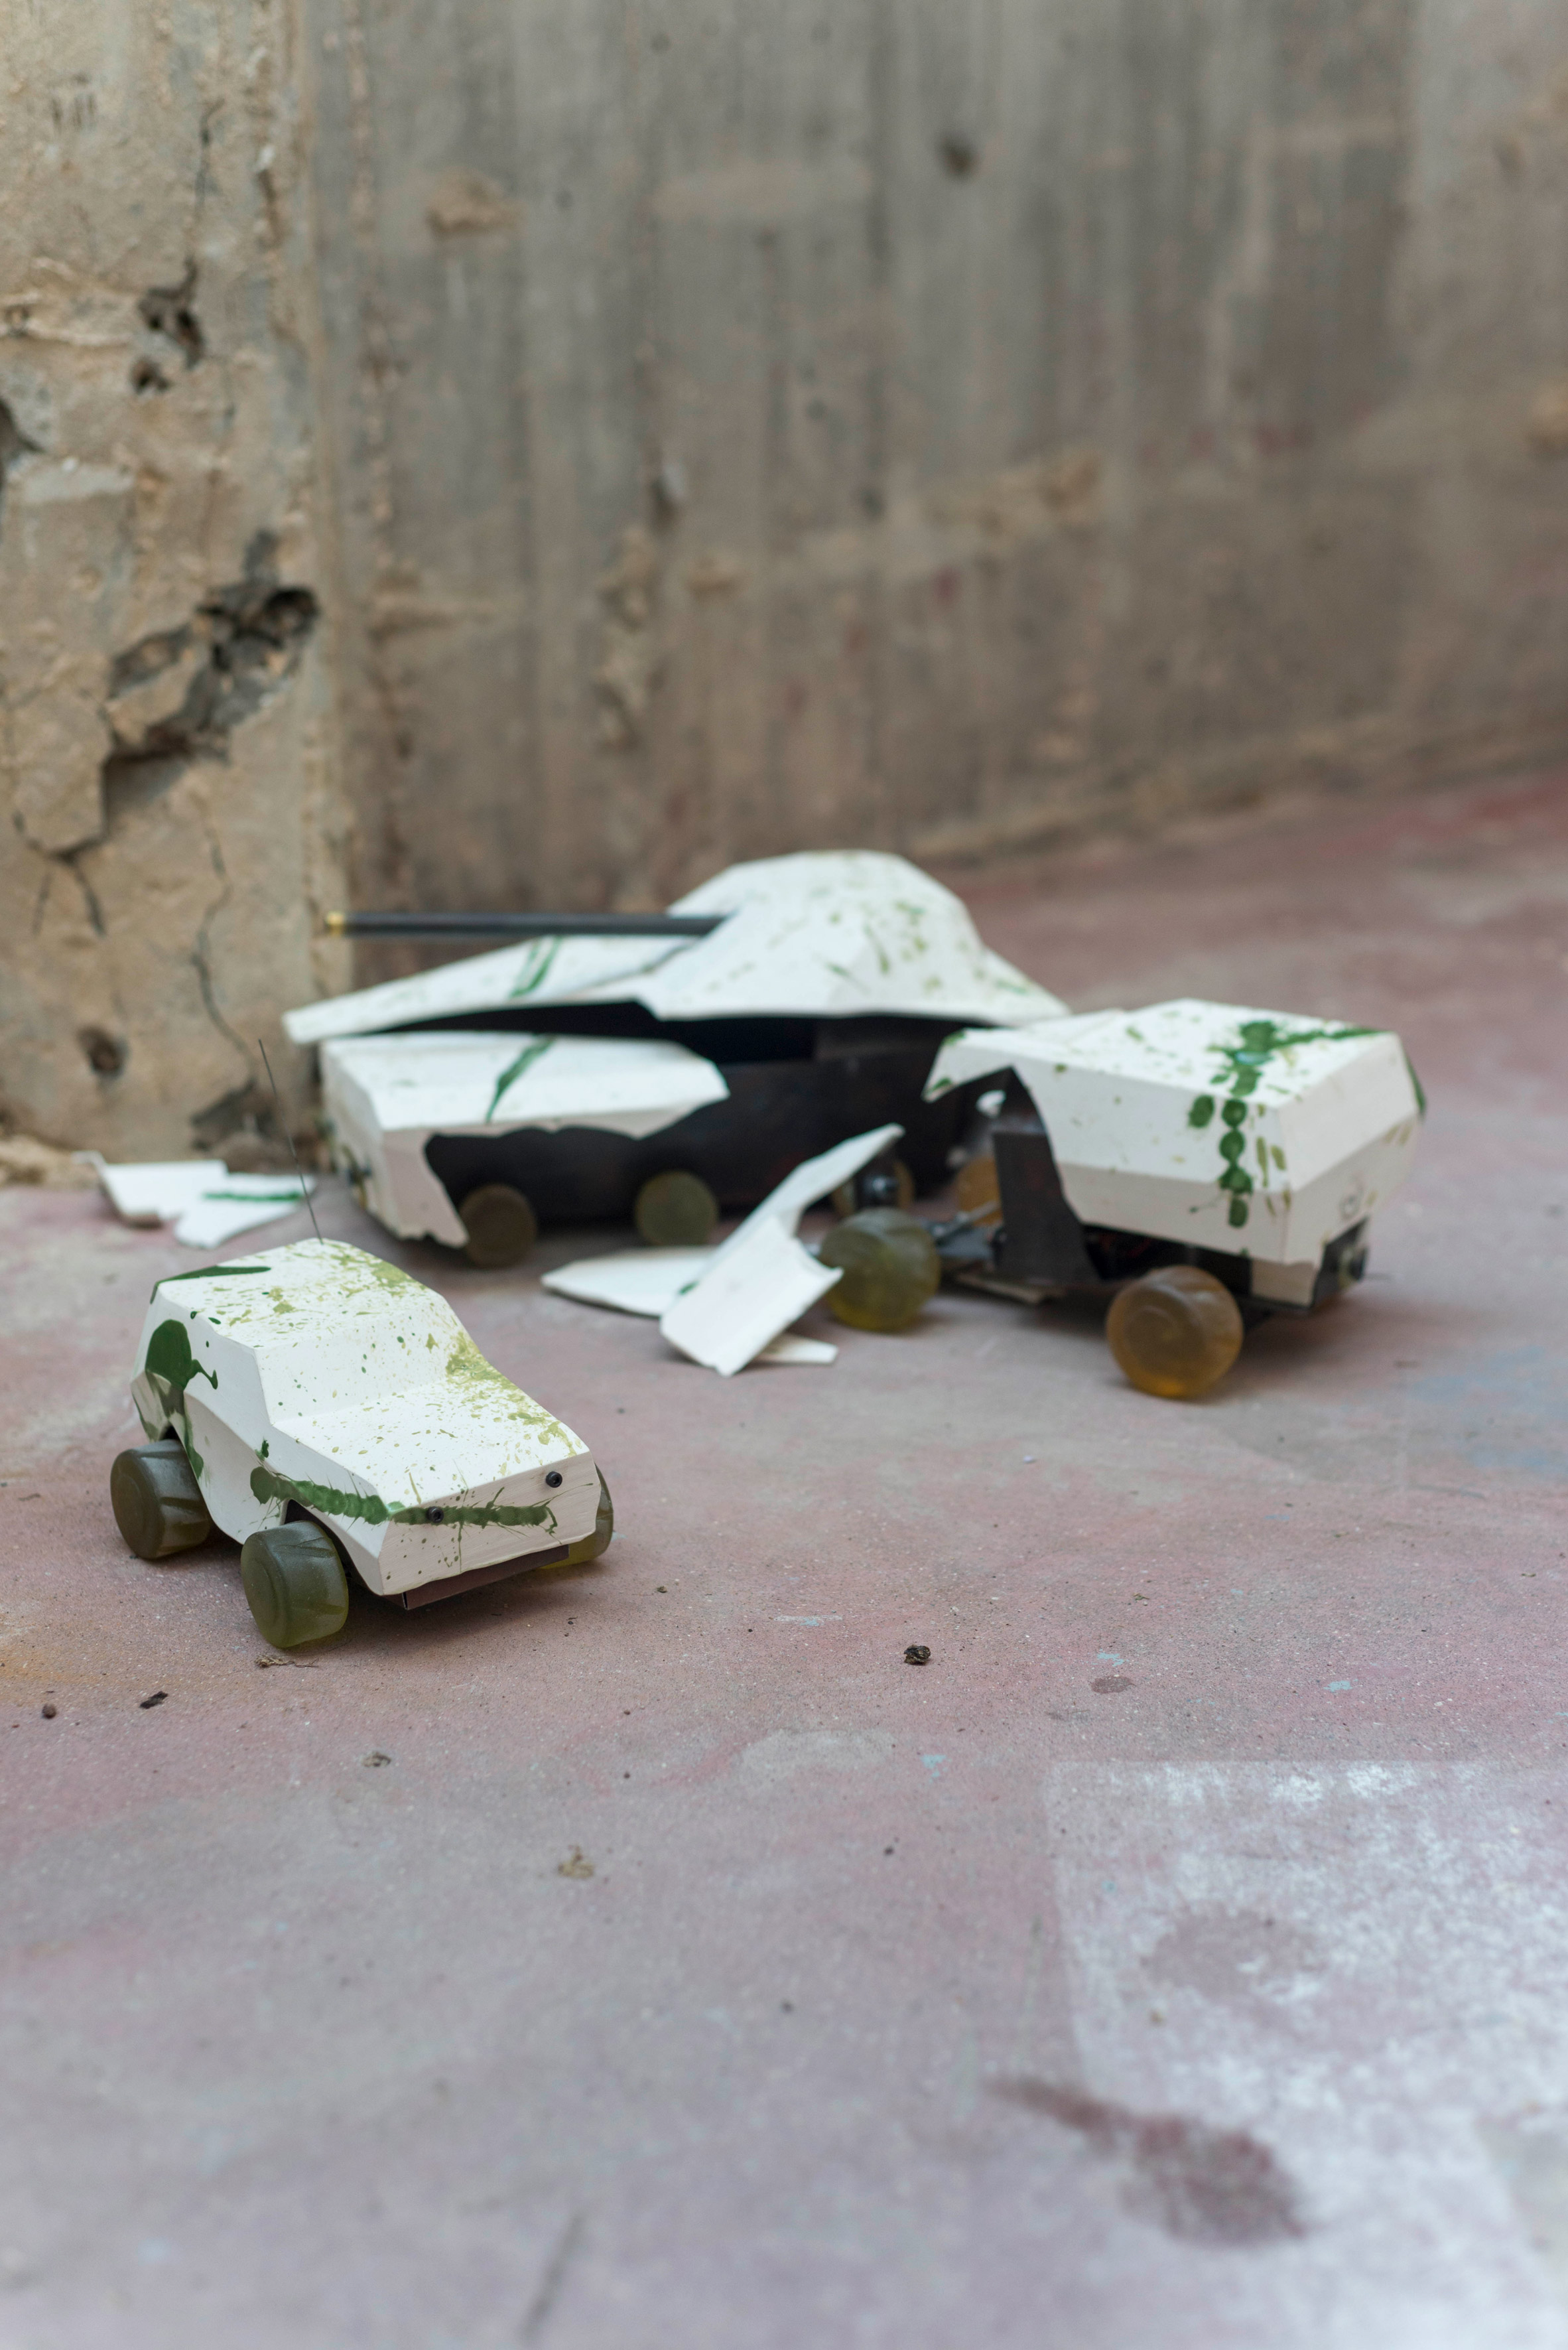 Oz Biri's ceramic military vehicles symbolise the "fragility of life"